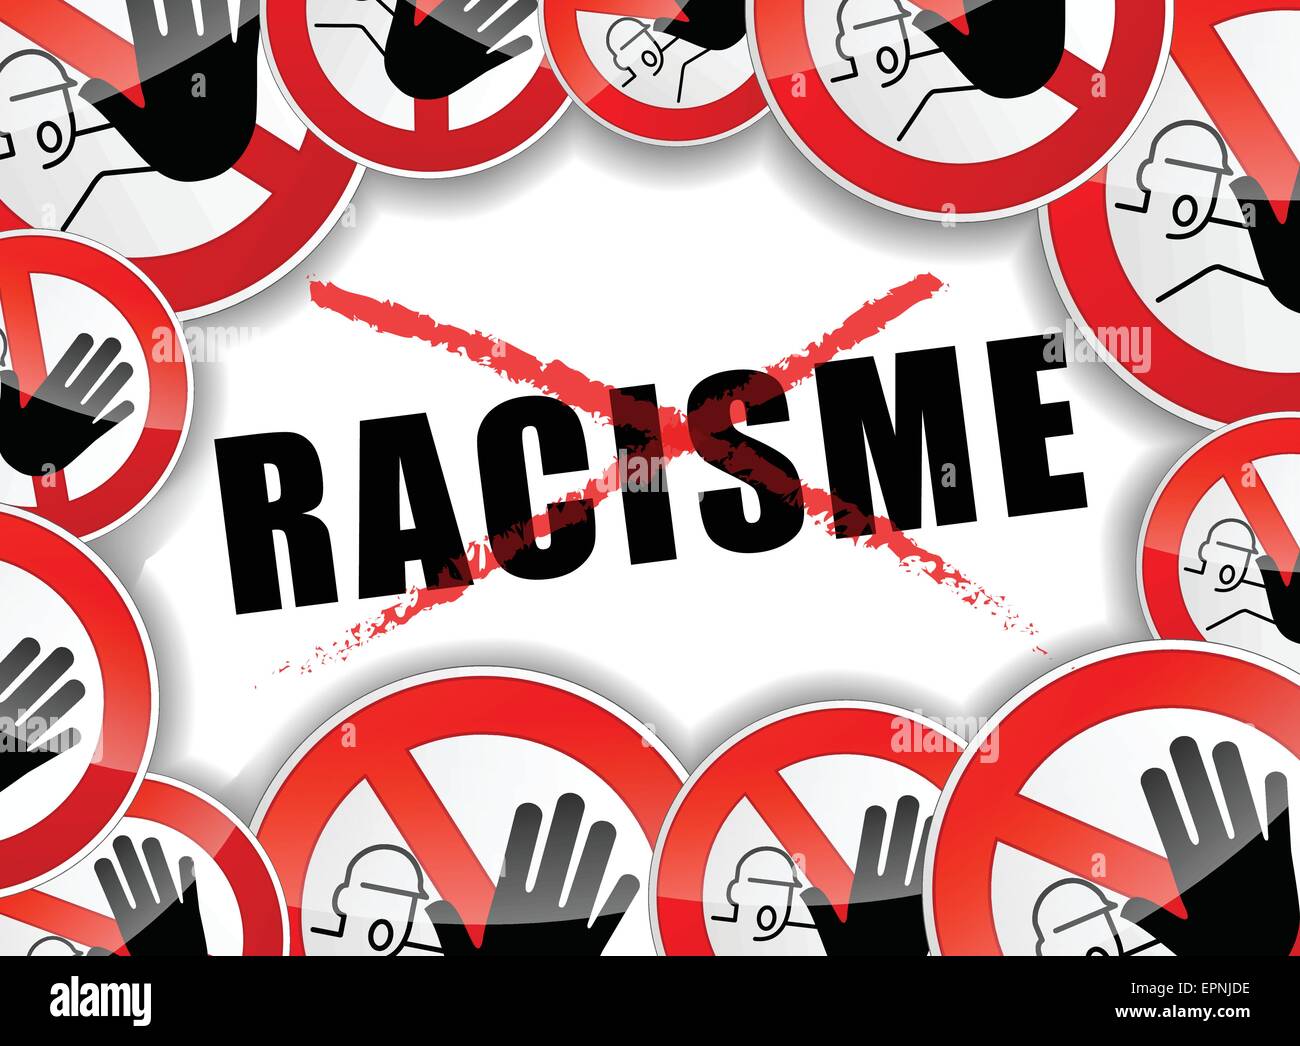 Traduzione in francese per fermare il razzismo illustrazione astratta Illustrazione Vettoriale